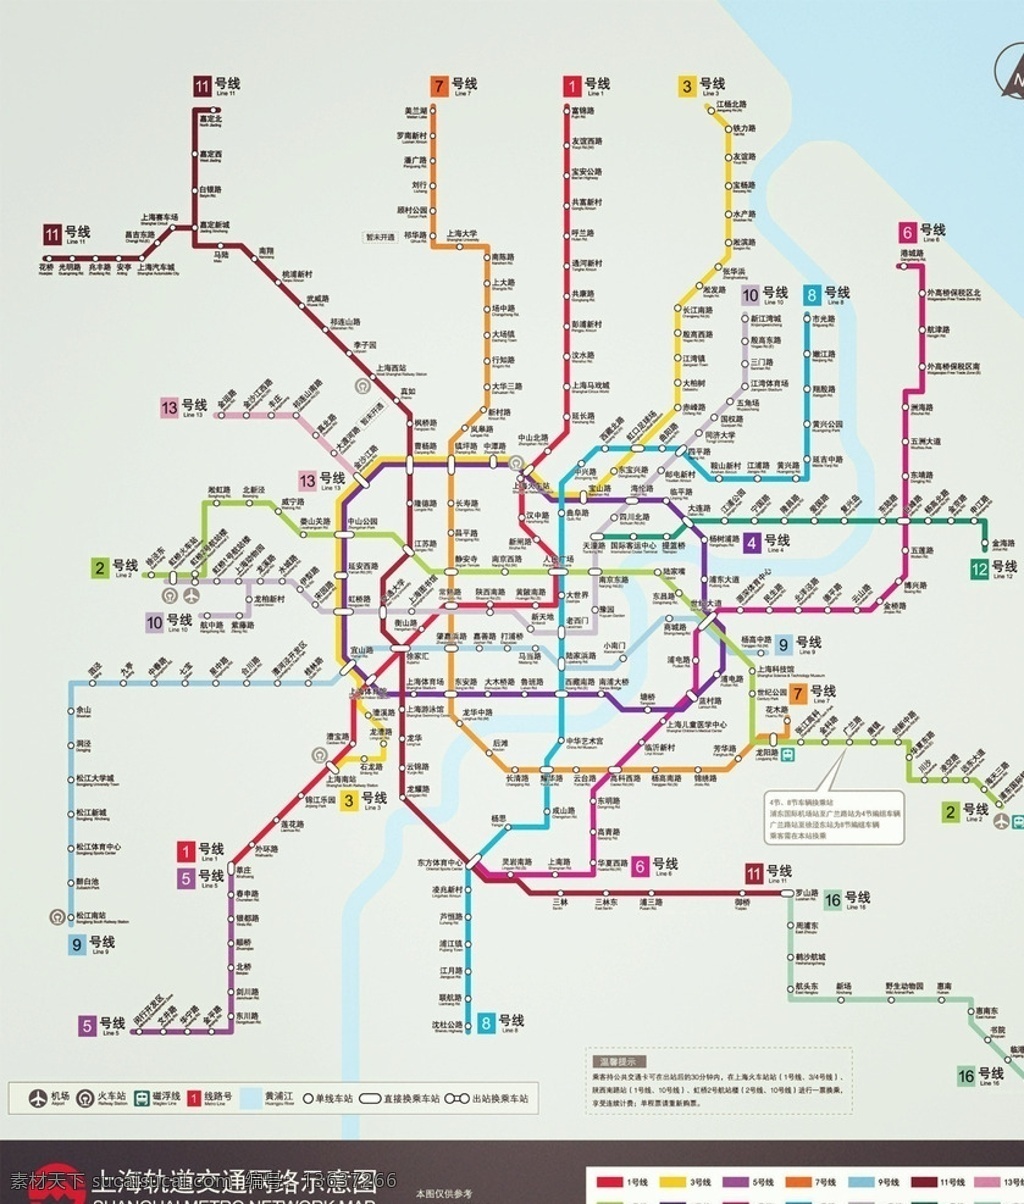 2014 上海 地铁 线路图 上海地铁 高清版 pdf 生活百科